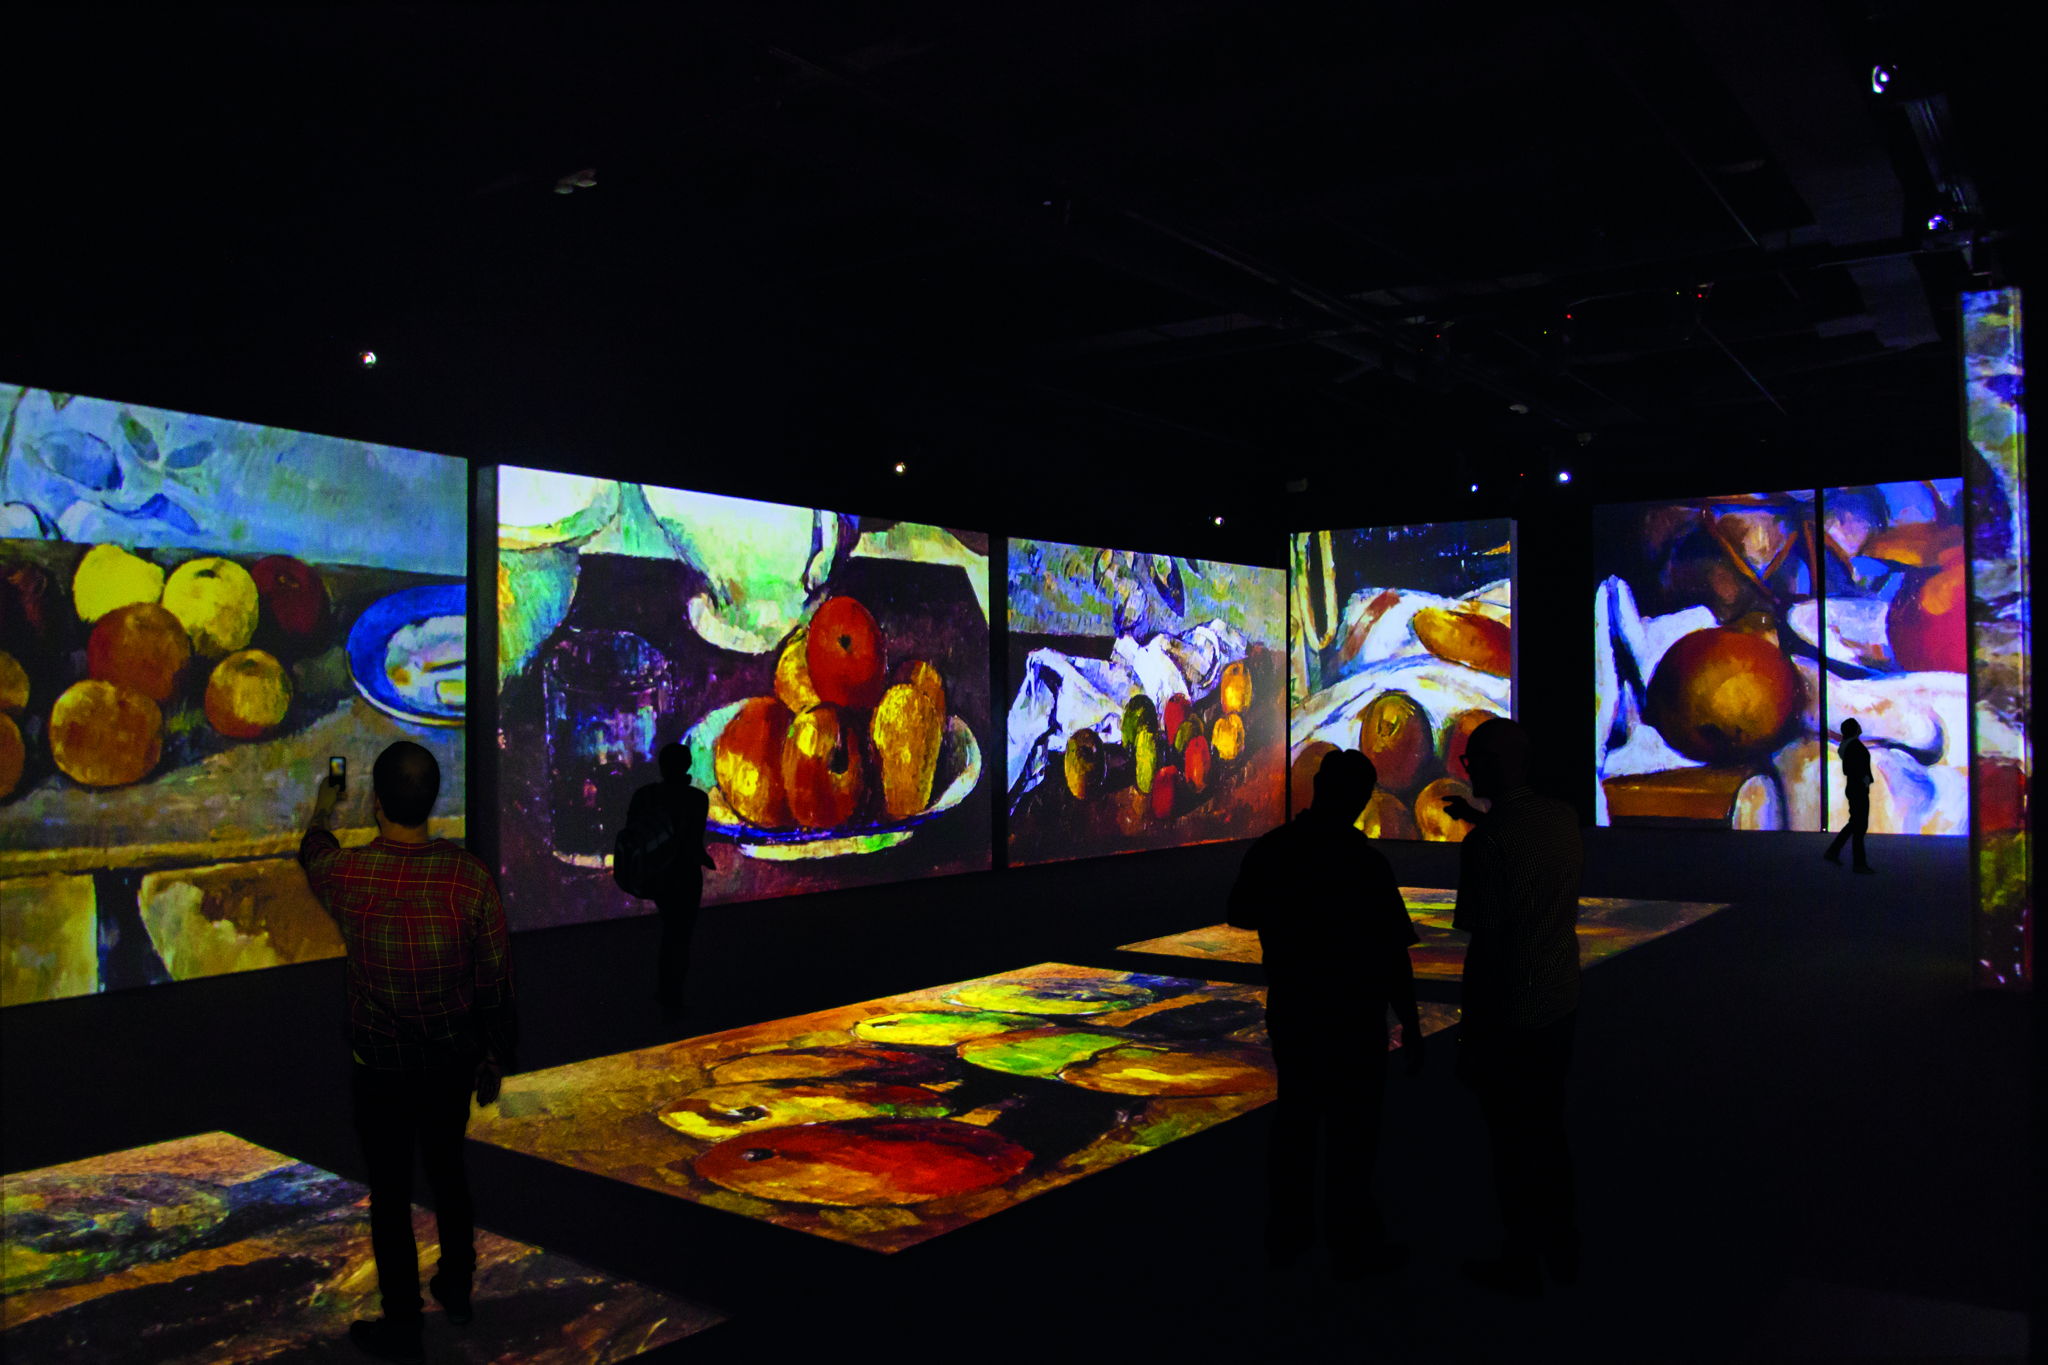 Мультимедийная выставка представляет шесть интерактивных зон